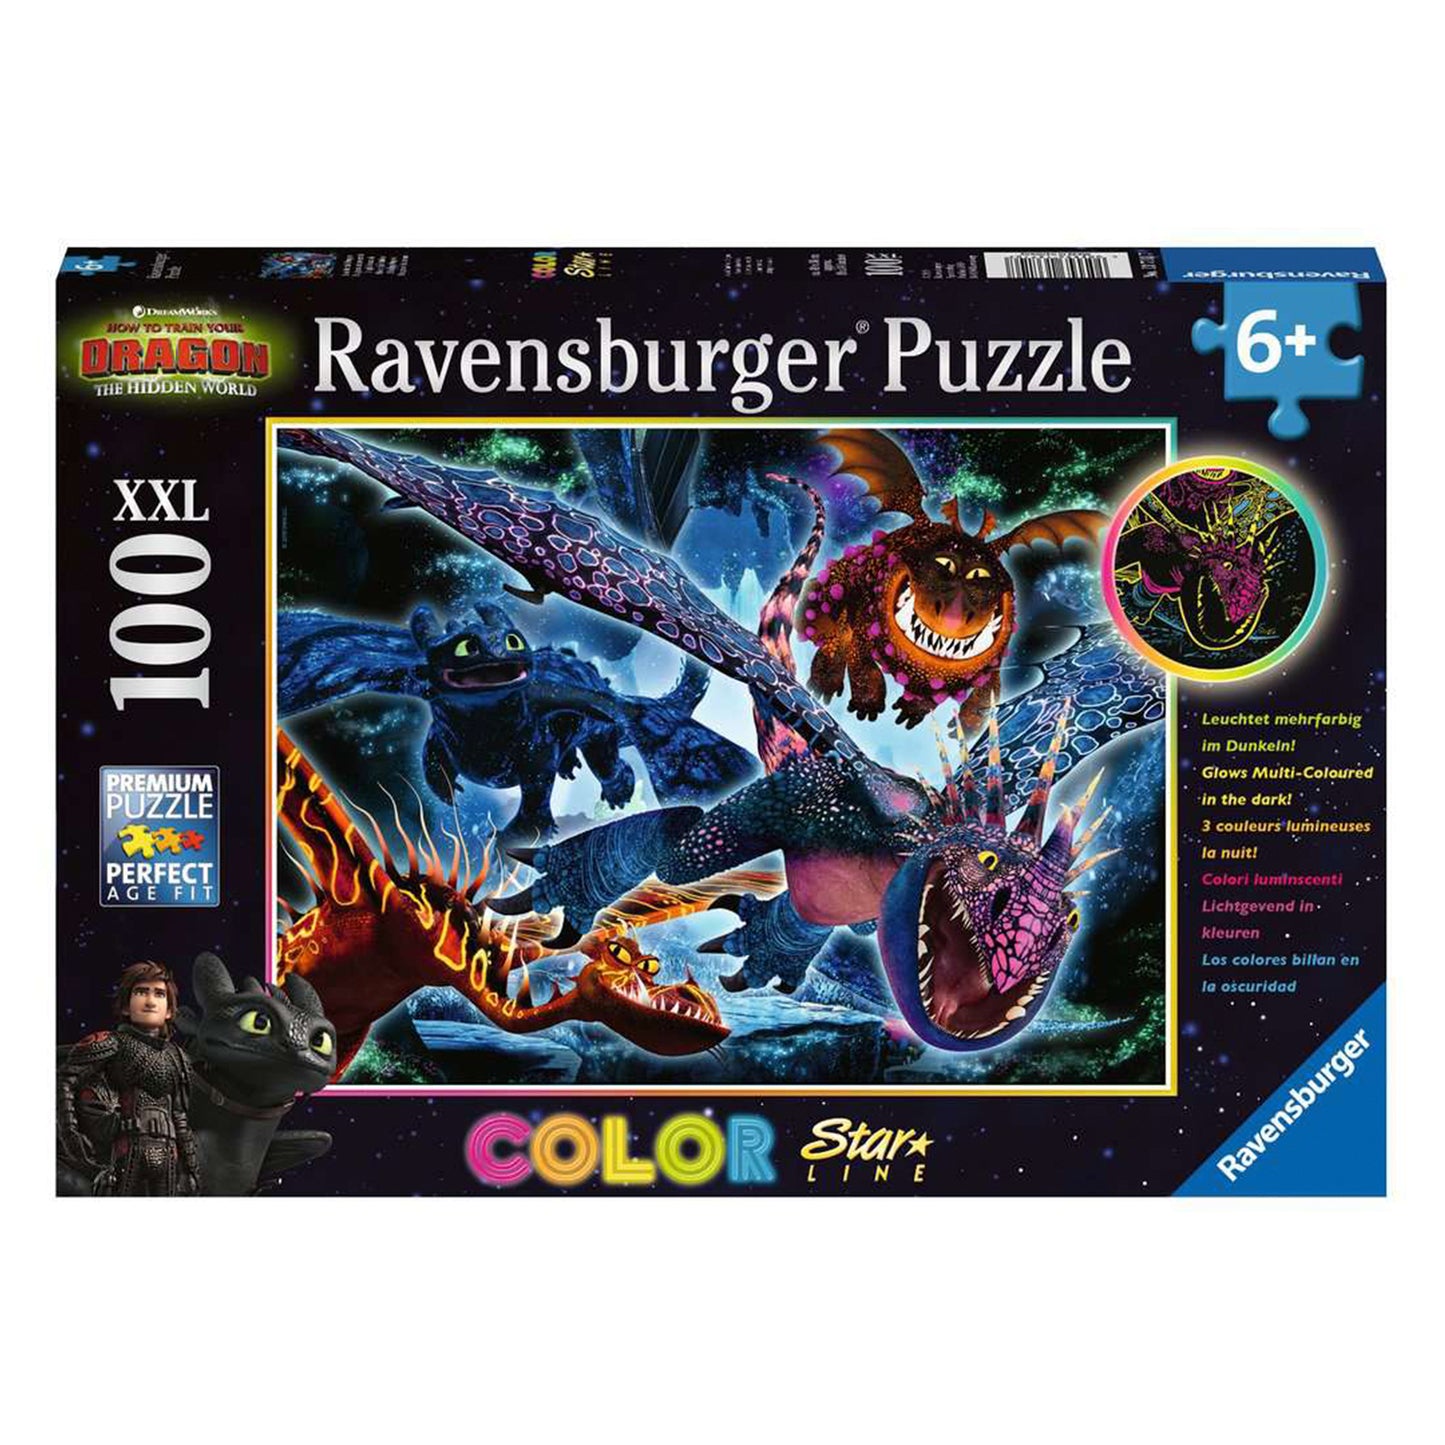 Ravensburger - Puzzle 100 PZ. XXL